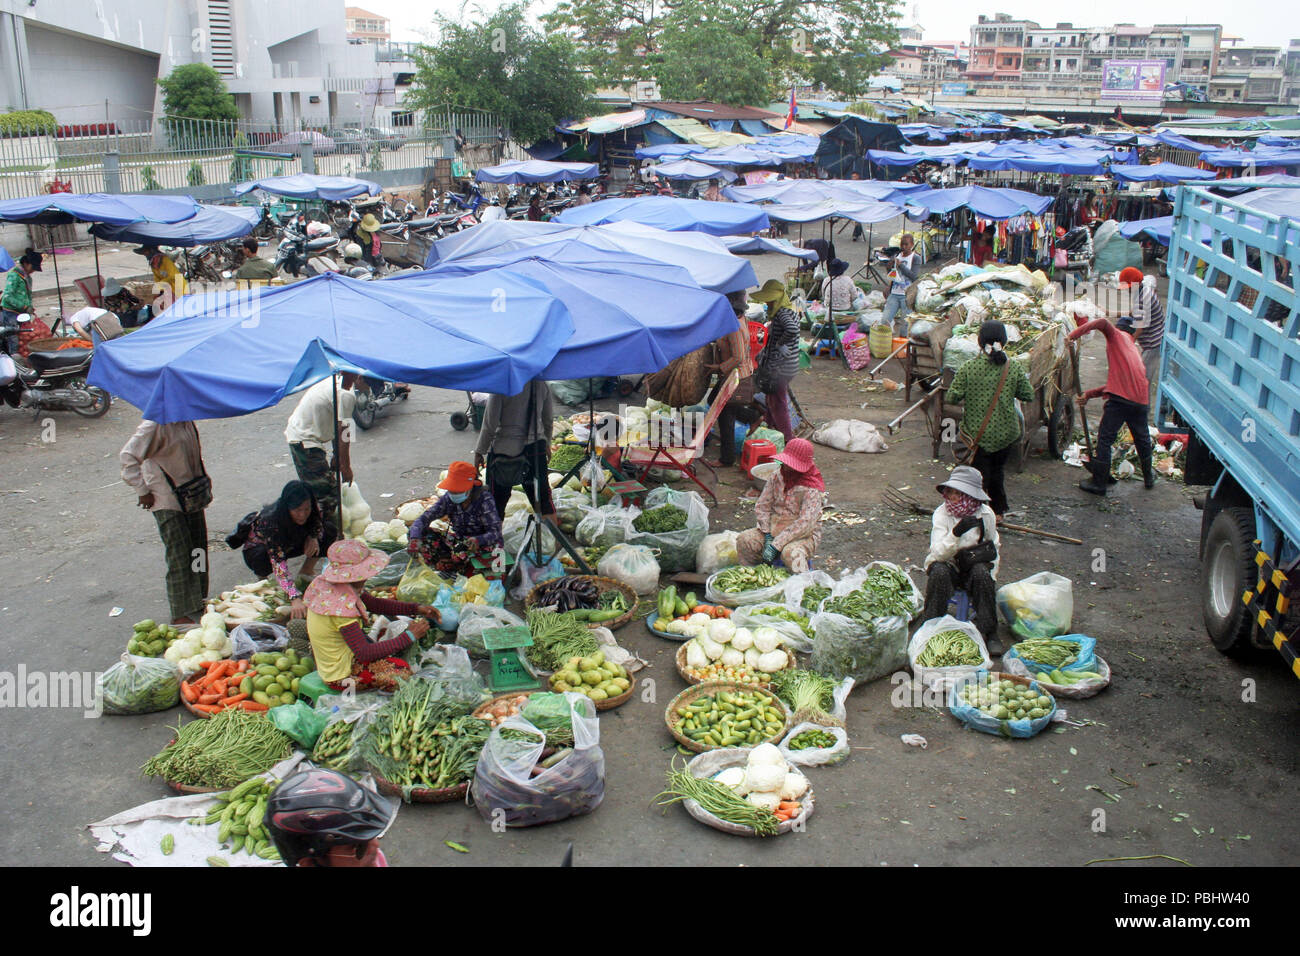 Mercato occupato sotto ombrelloni blu con edifici in background, Cambogia Foto Stock